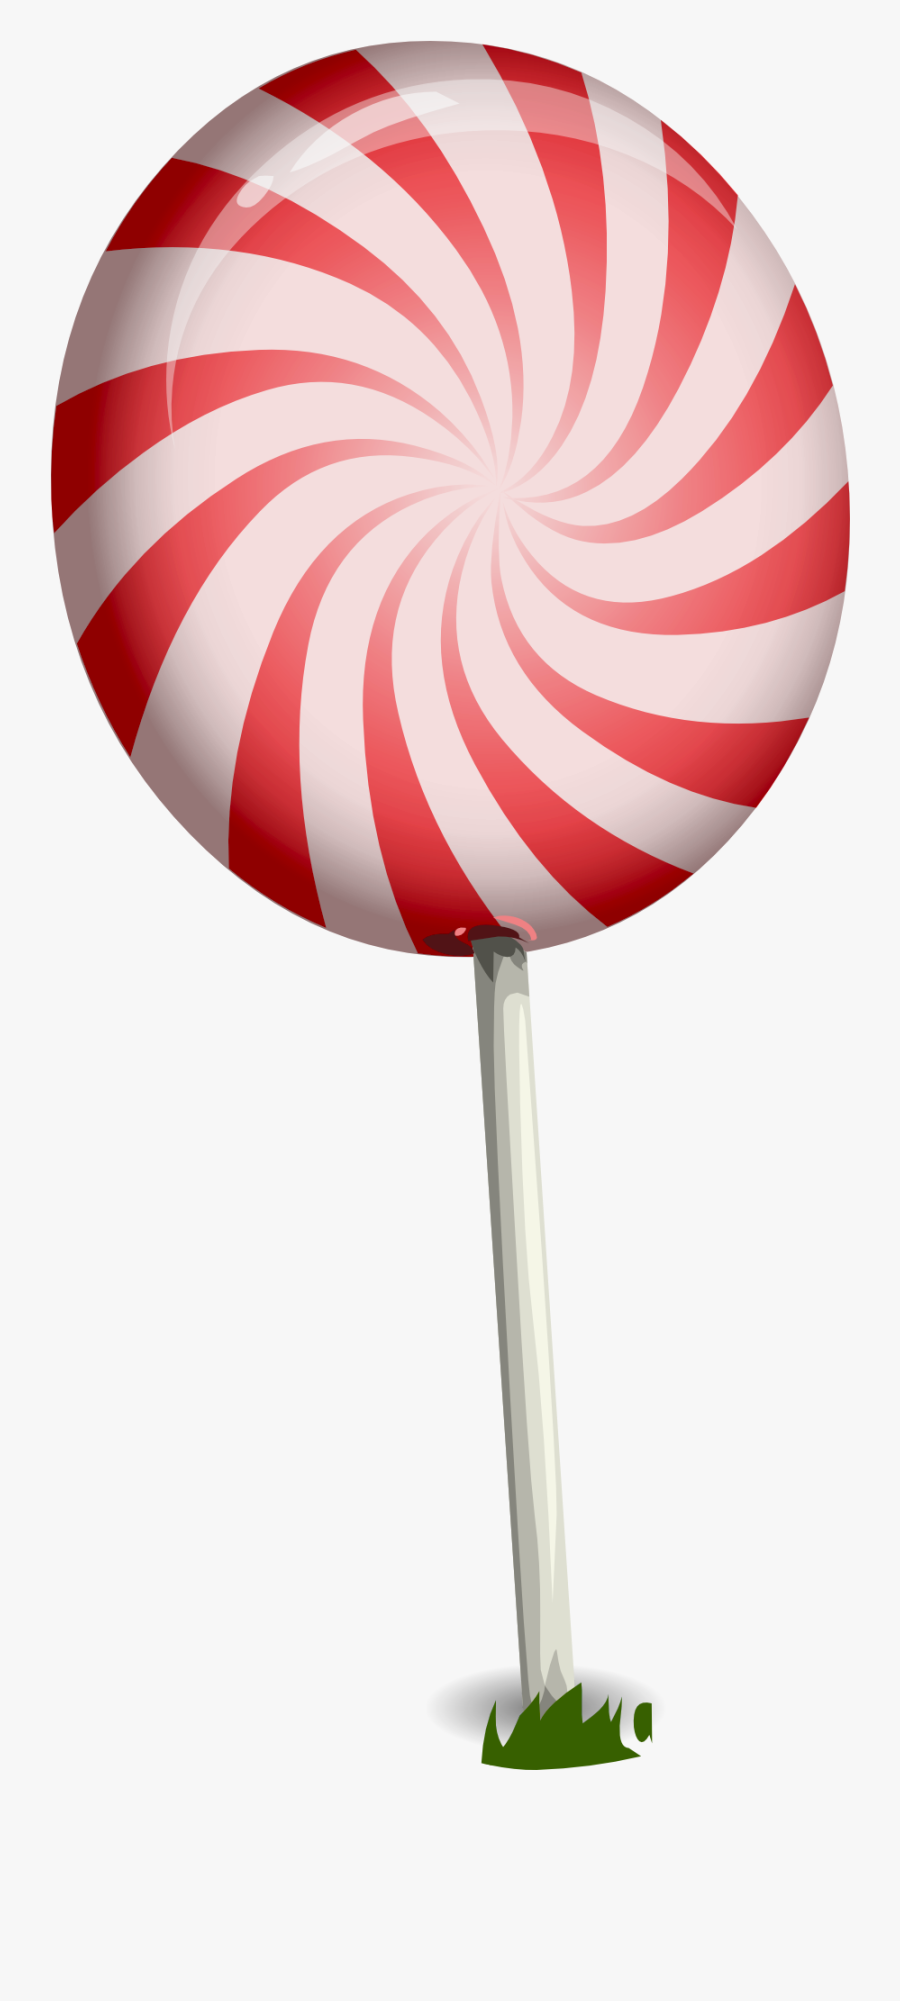 Lollipop Clipart Candy - Lollipop Png, Transparent Clipart